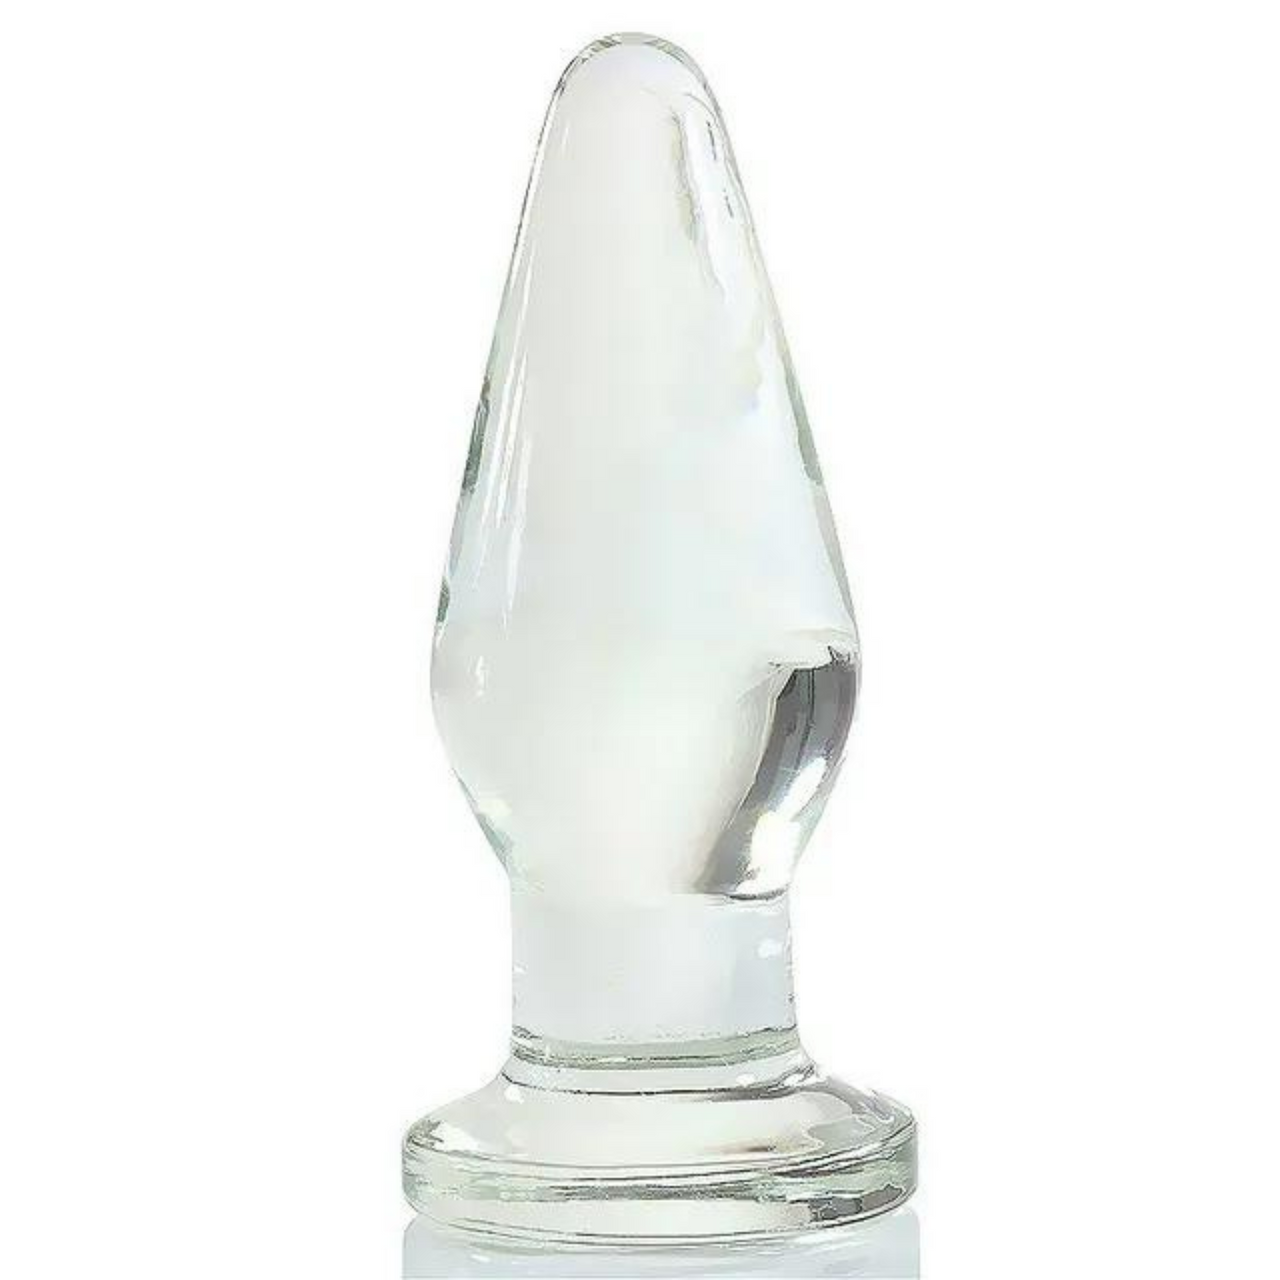 Elegant Solid Glass Anal Plug Decorative Secret Sculpture Doubles as Sensory Pleasure Toy